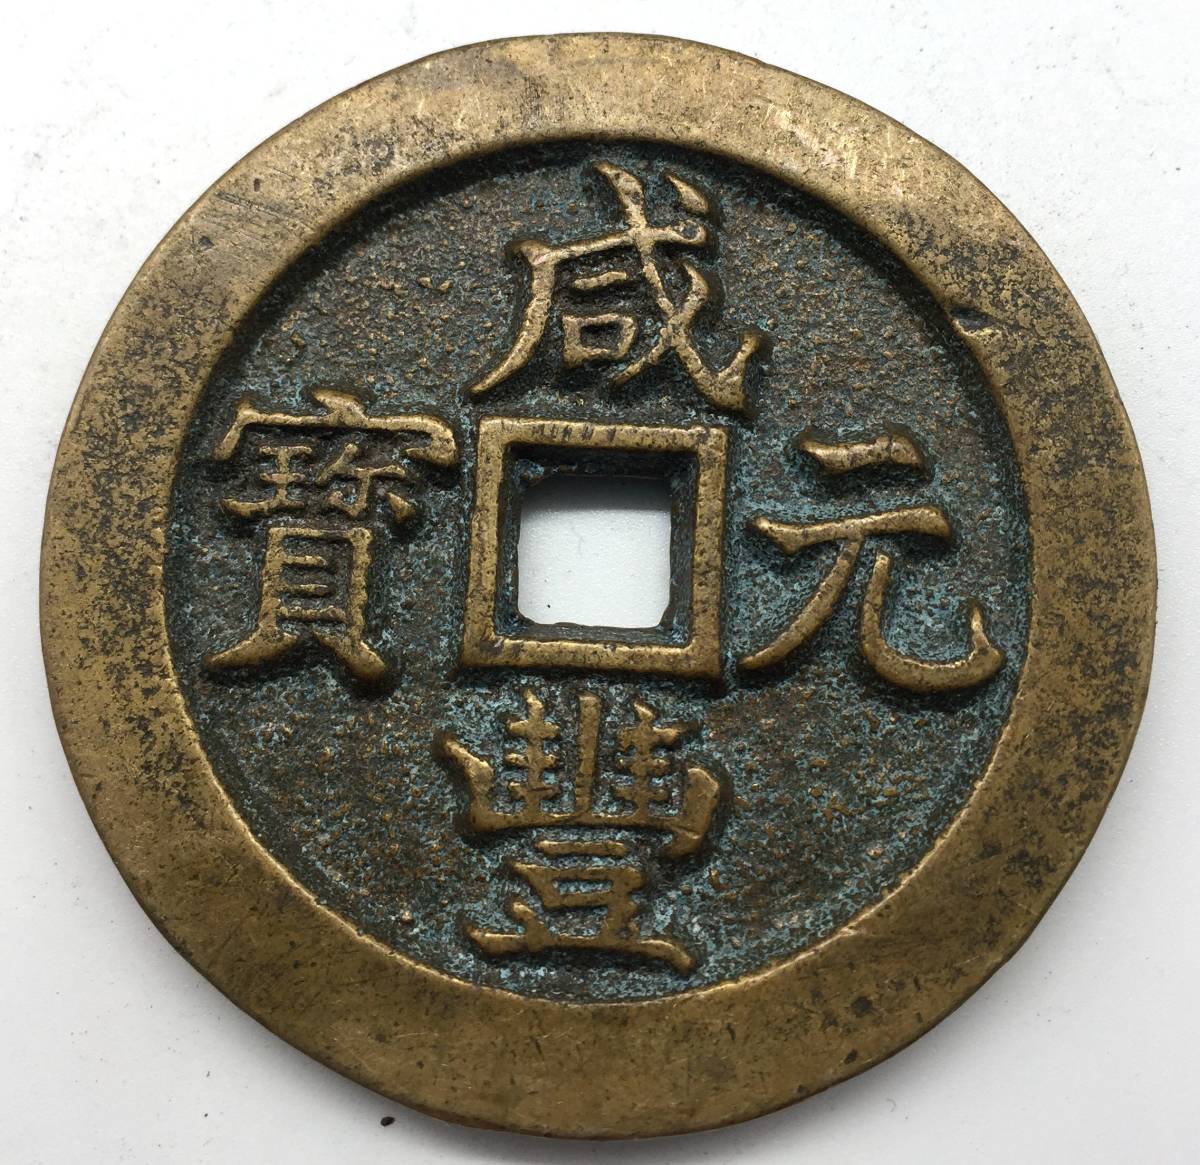  原文:古銭 中国 咸豊元宝 背 當五百 希少珍品 貴重 直径約60mm 重さ約91.5g